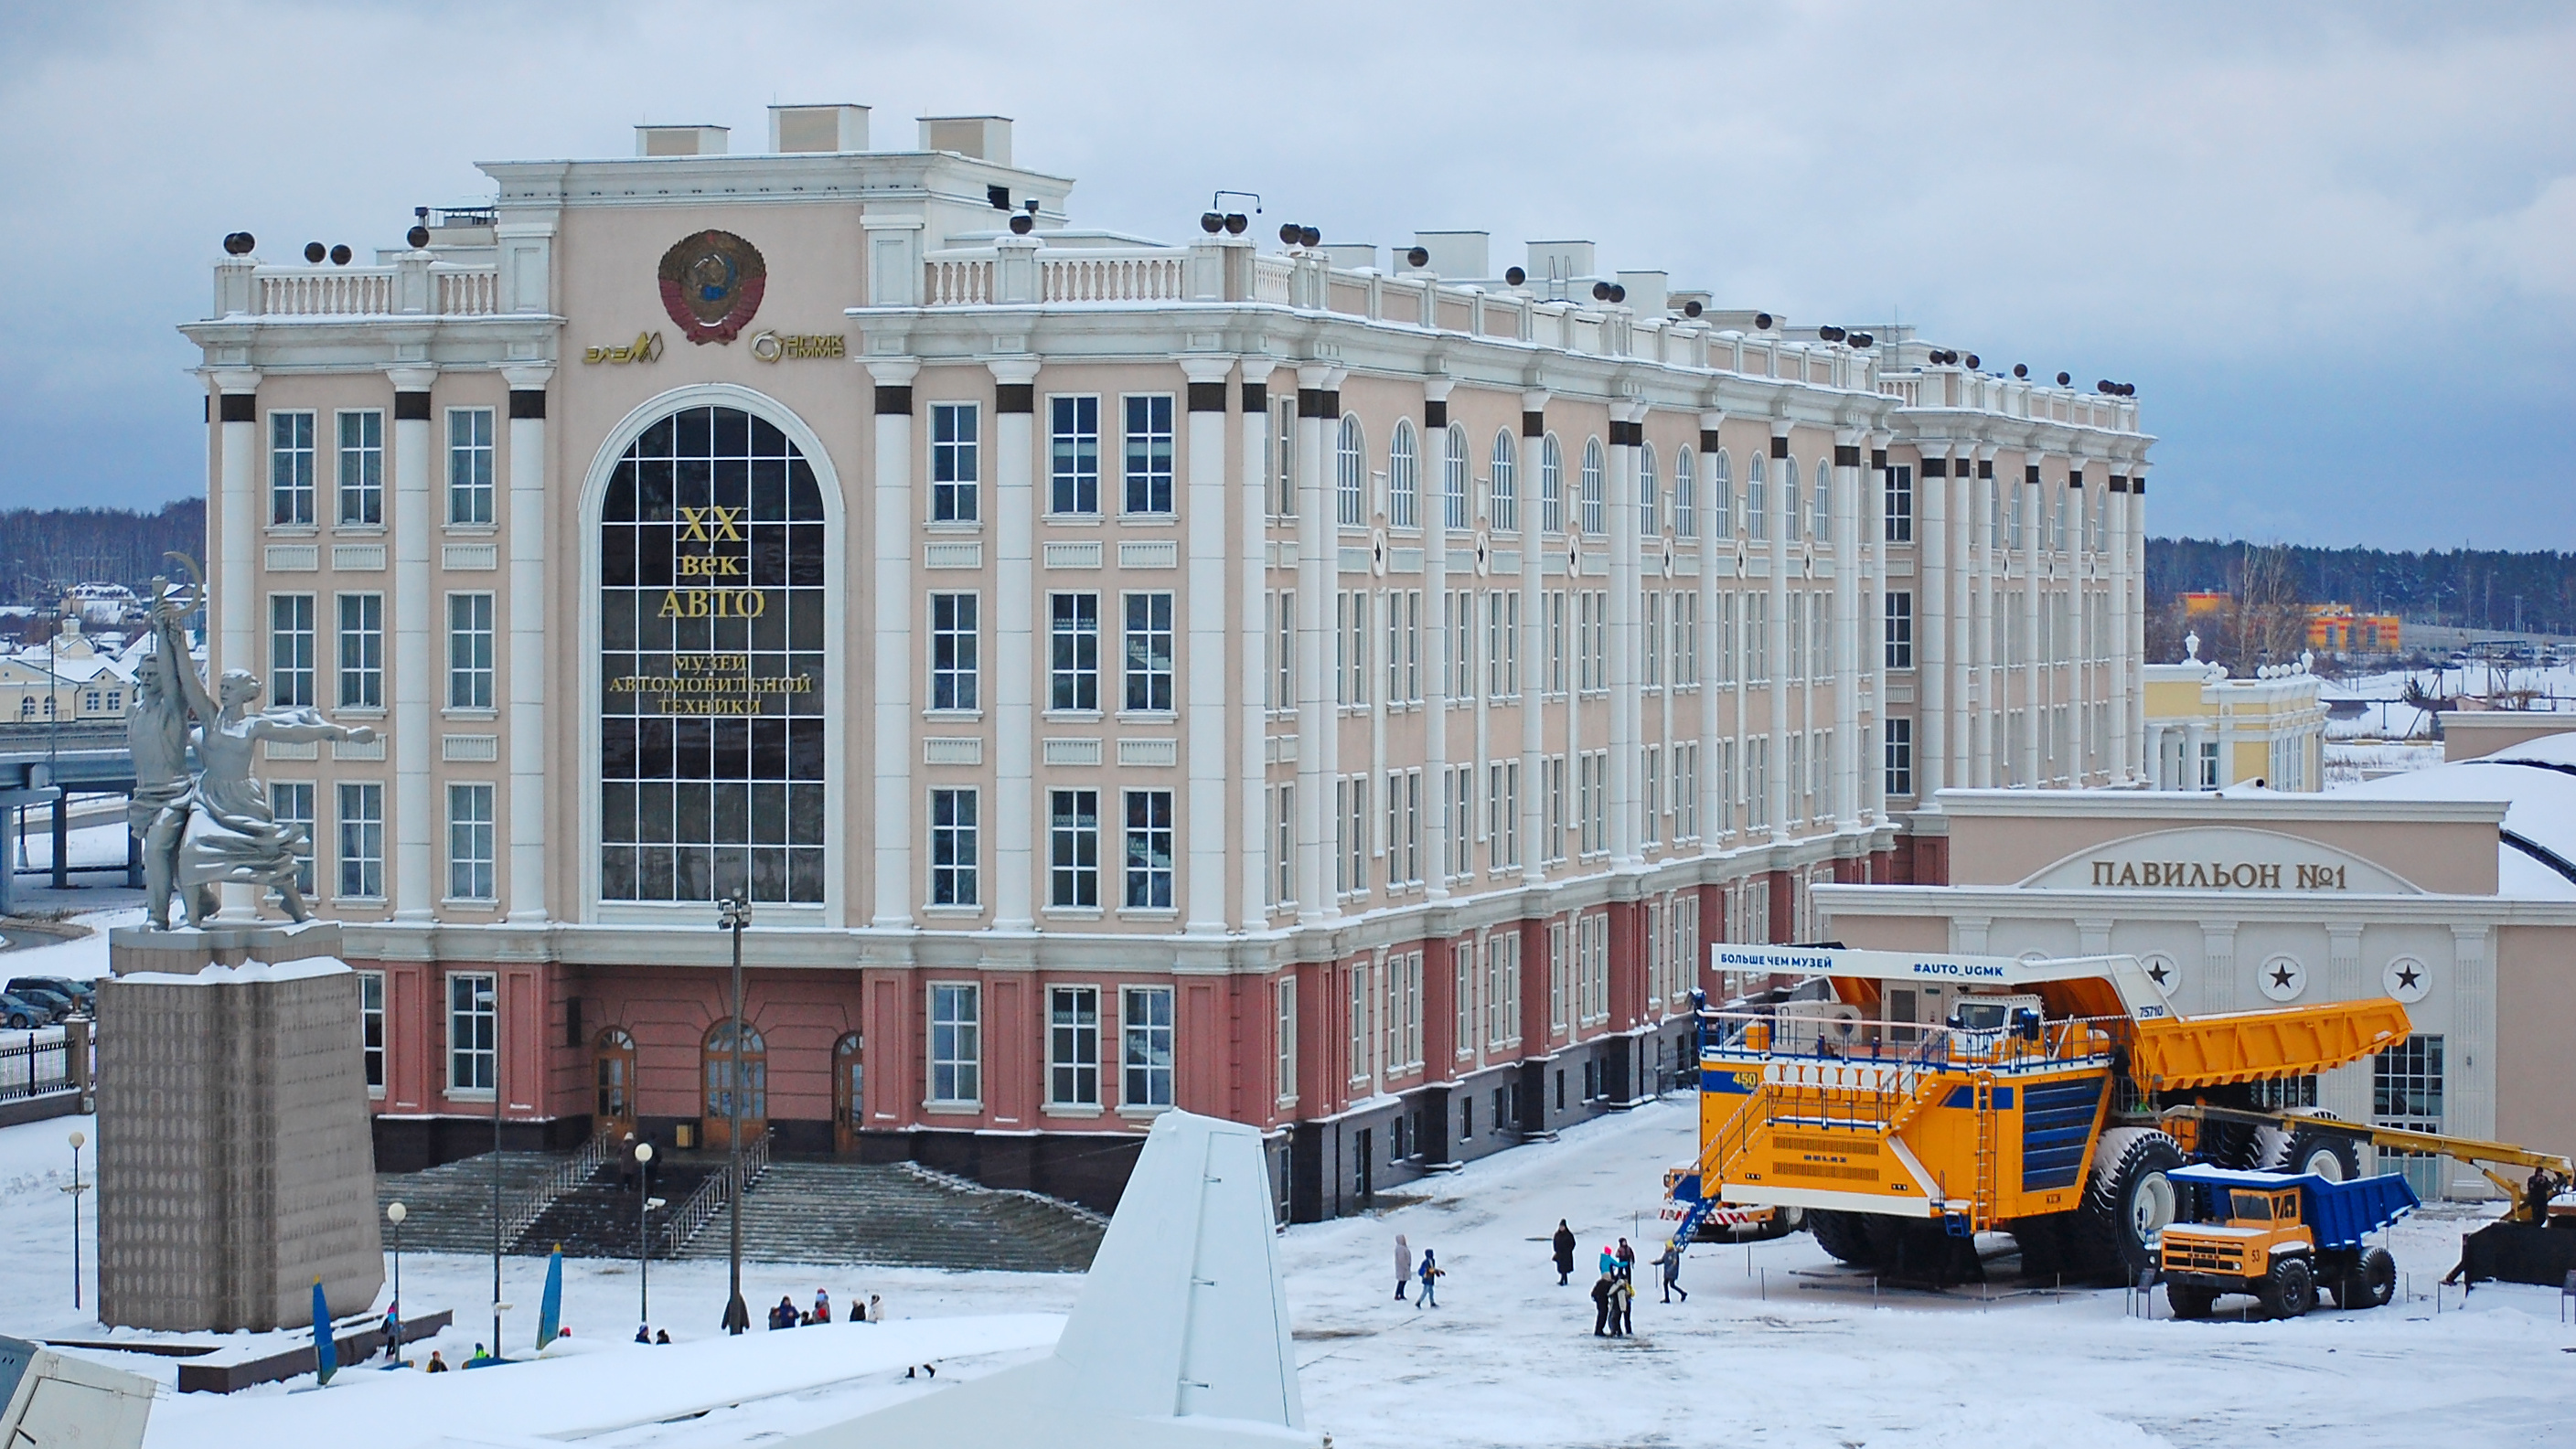 Самый большой в мире самосвал из Кузбасса собрали под Екатеринбургом. Это была целая спецоперация